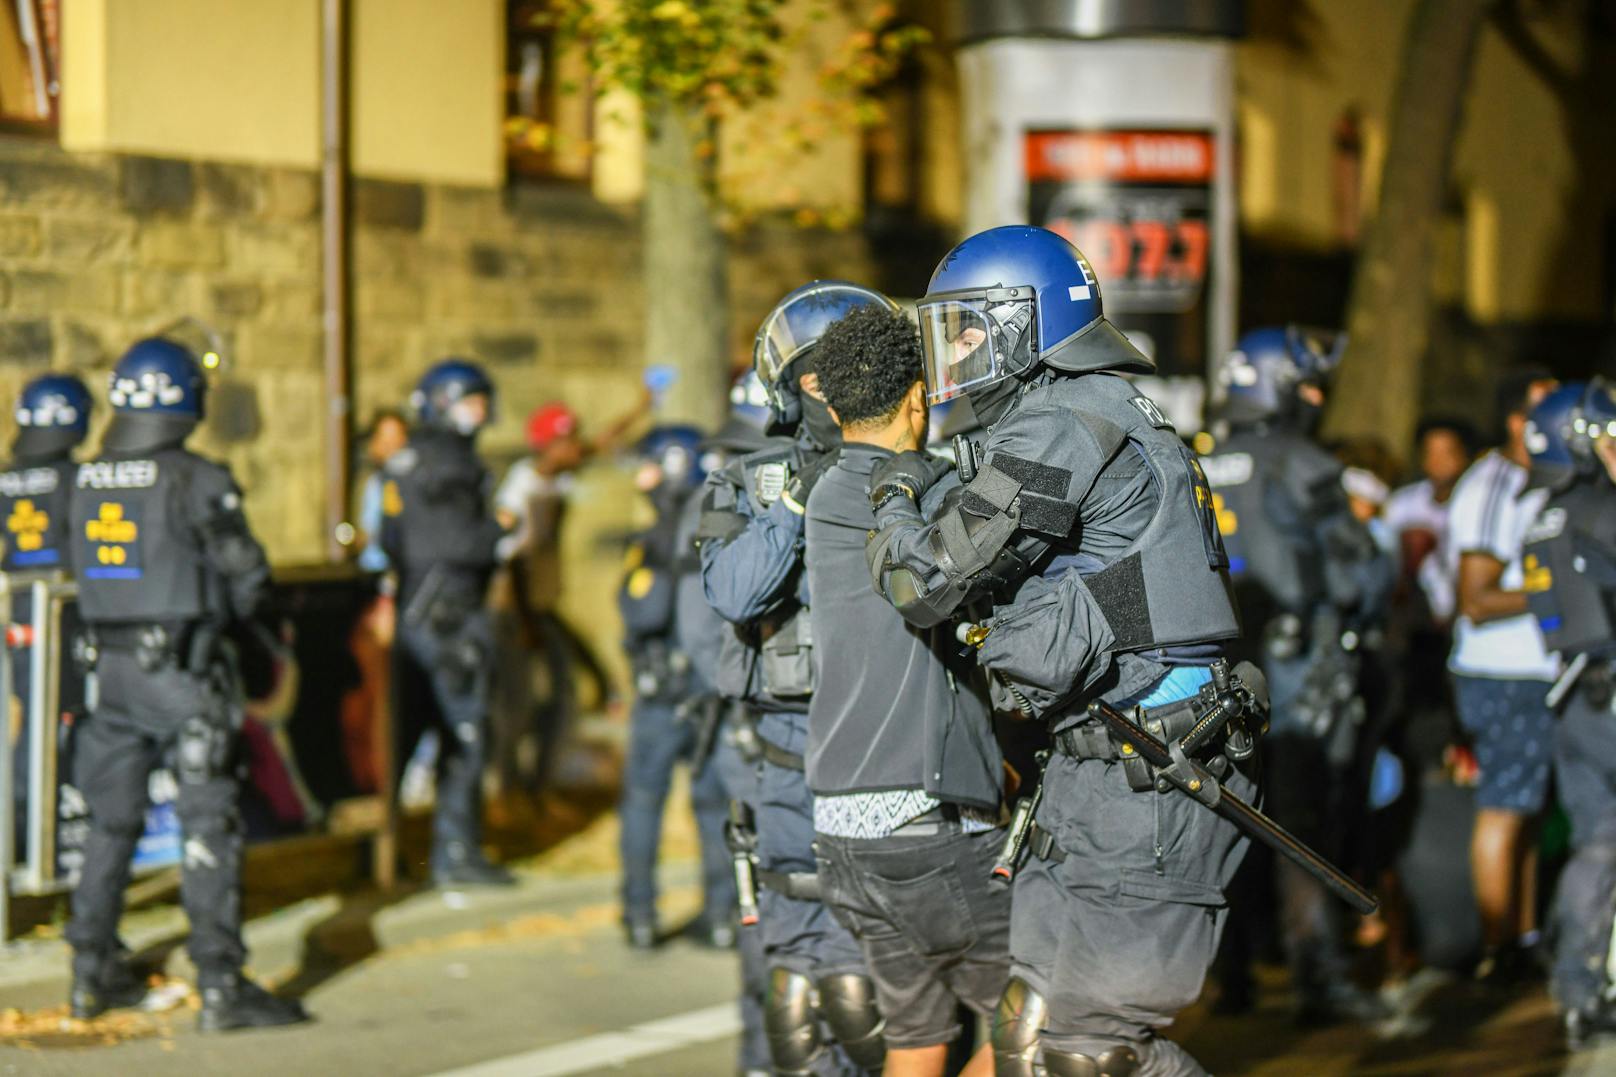 Bei den Ausschreitungen in Stuttgart sind 26 Polizeibeamte verletzt worden. Sechs Beamte wurden im Spital behandelt. Fünf Polizisten konnten ihren Dienst den Angaben zufolge nicht weiter ausführen. 300 Beamte seien insgesamt am Samstag im Einsatz gewesen.